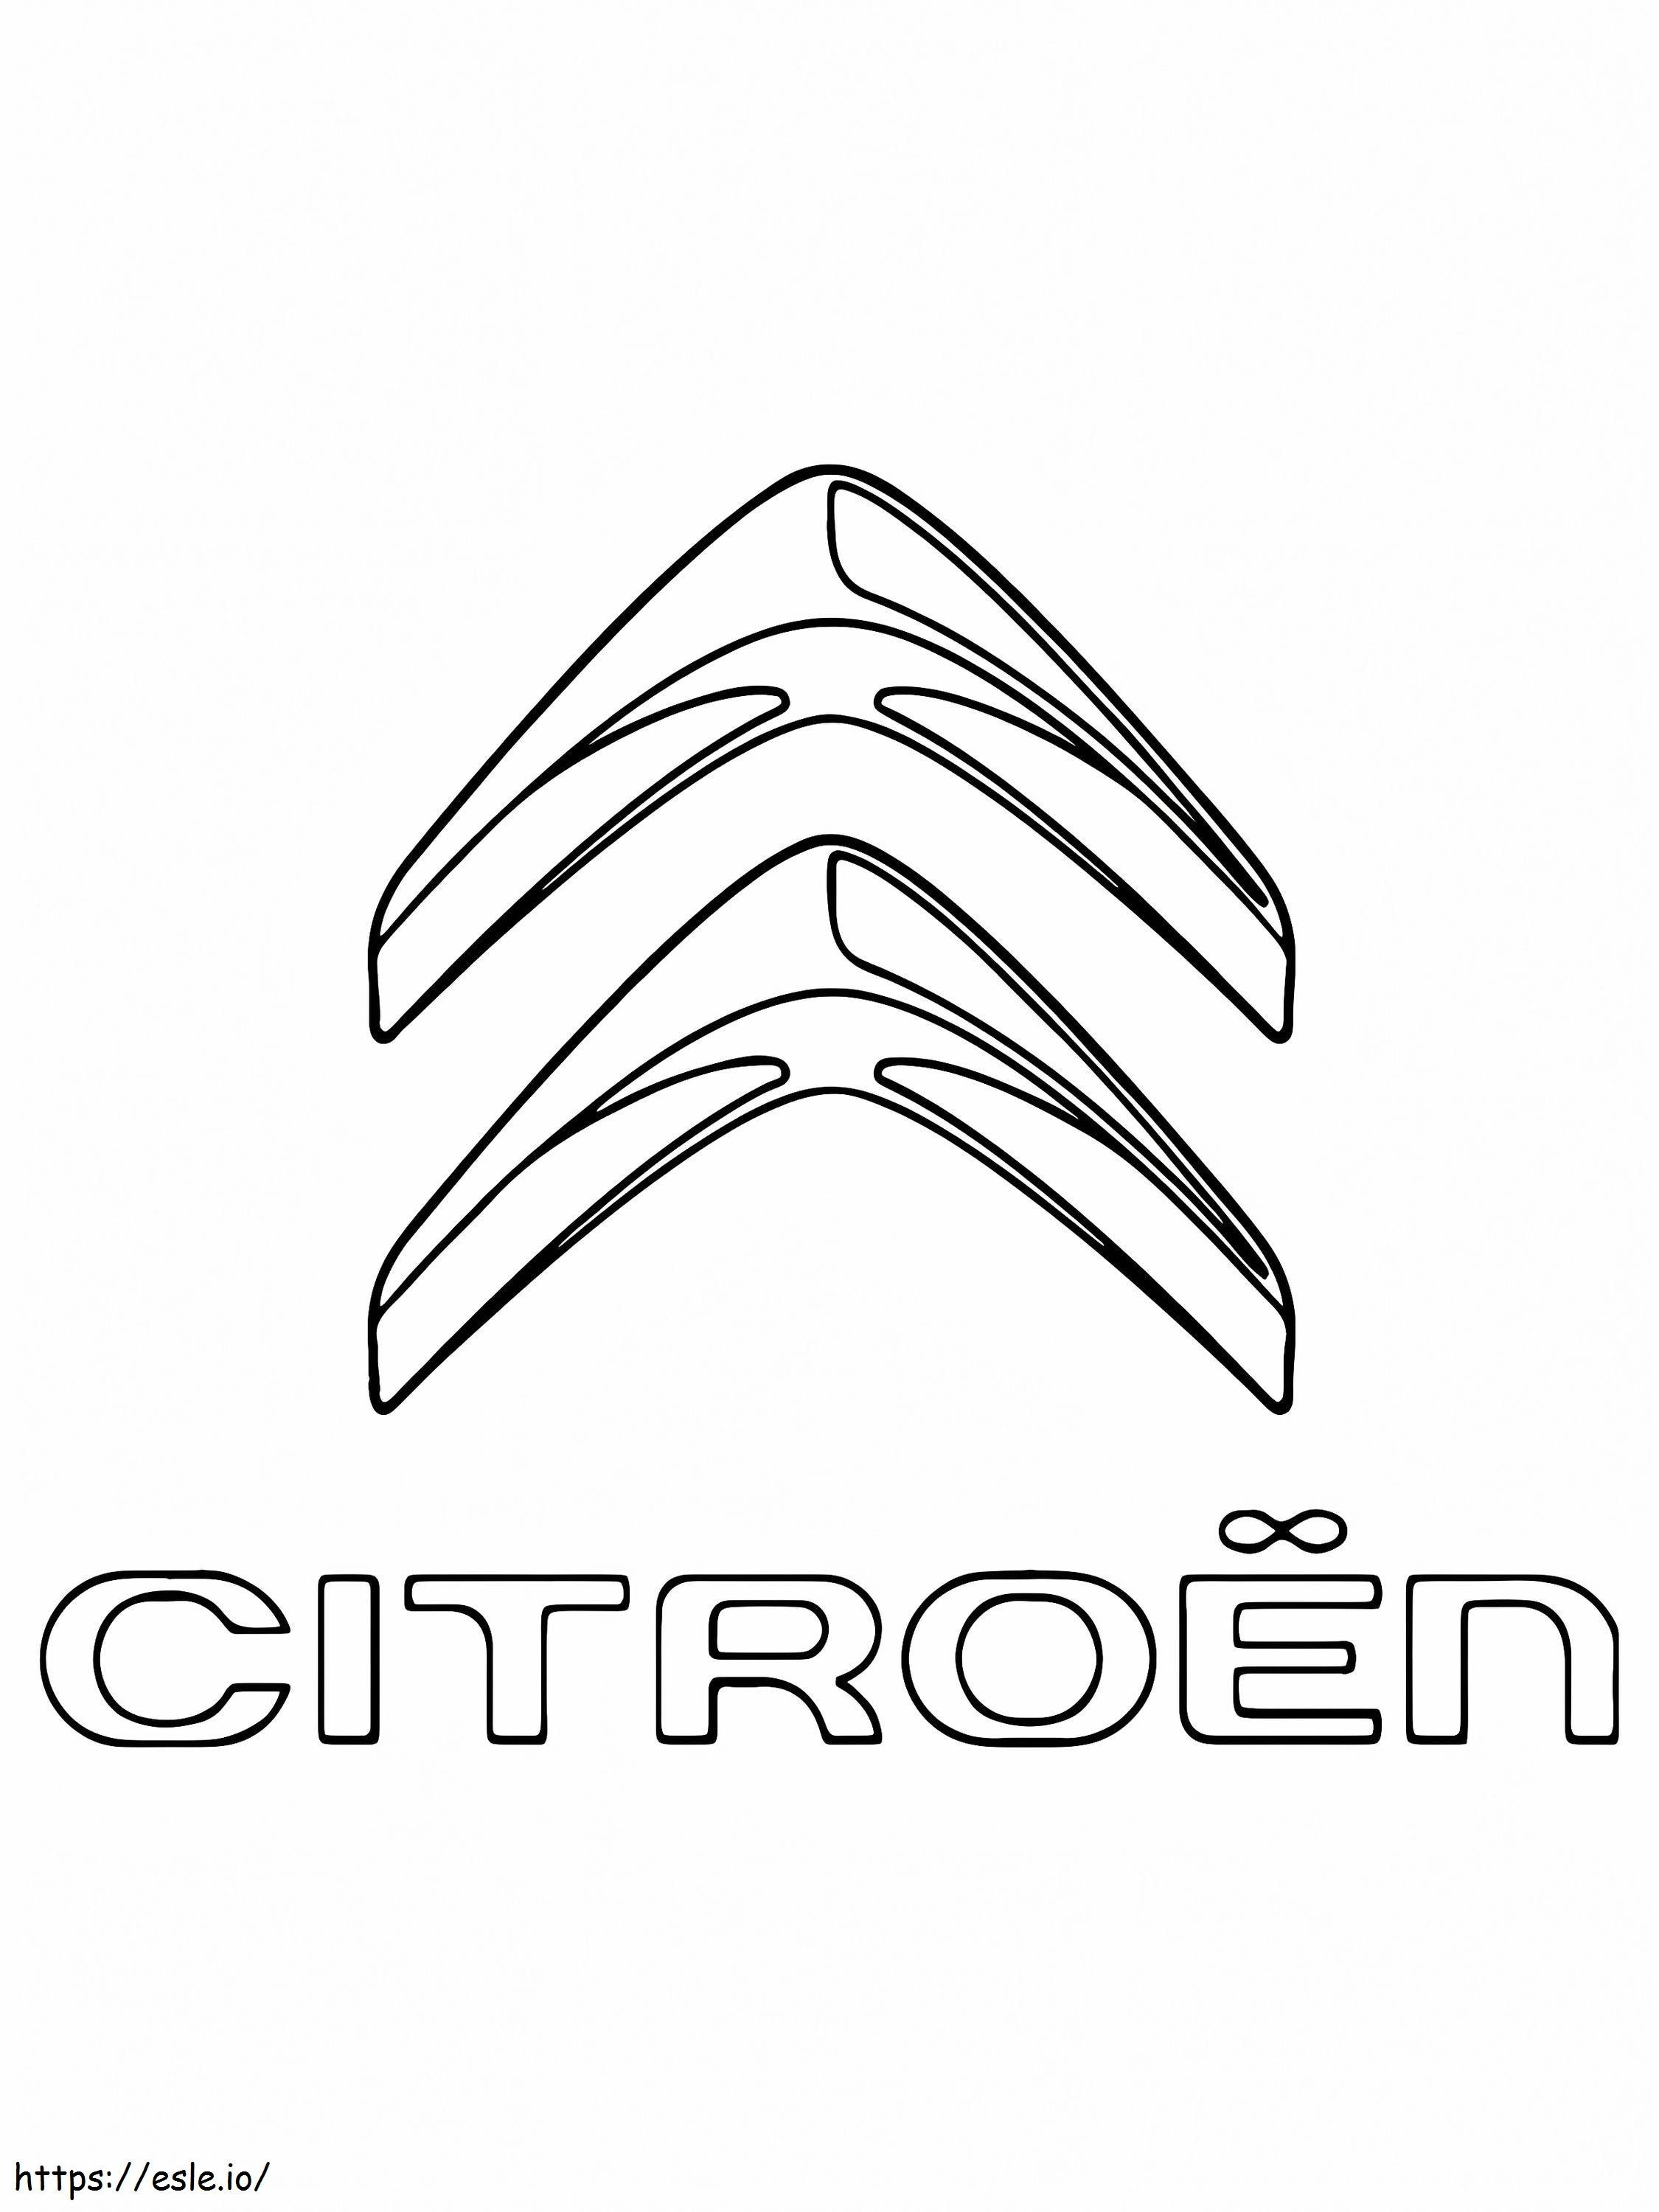 Logotipo Do Carro Citroën para colorir